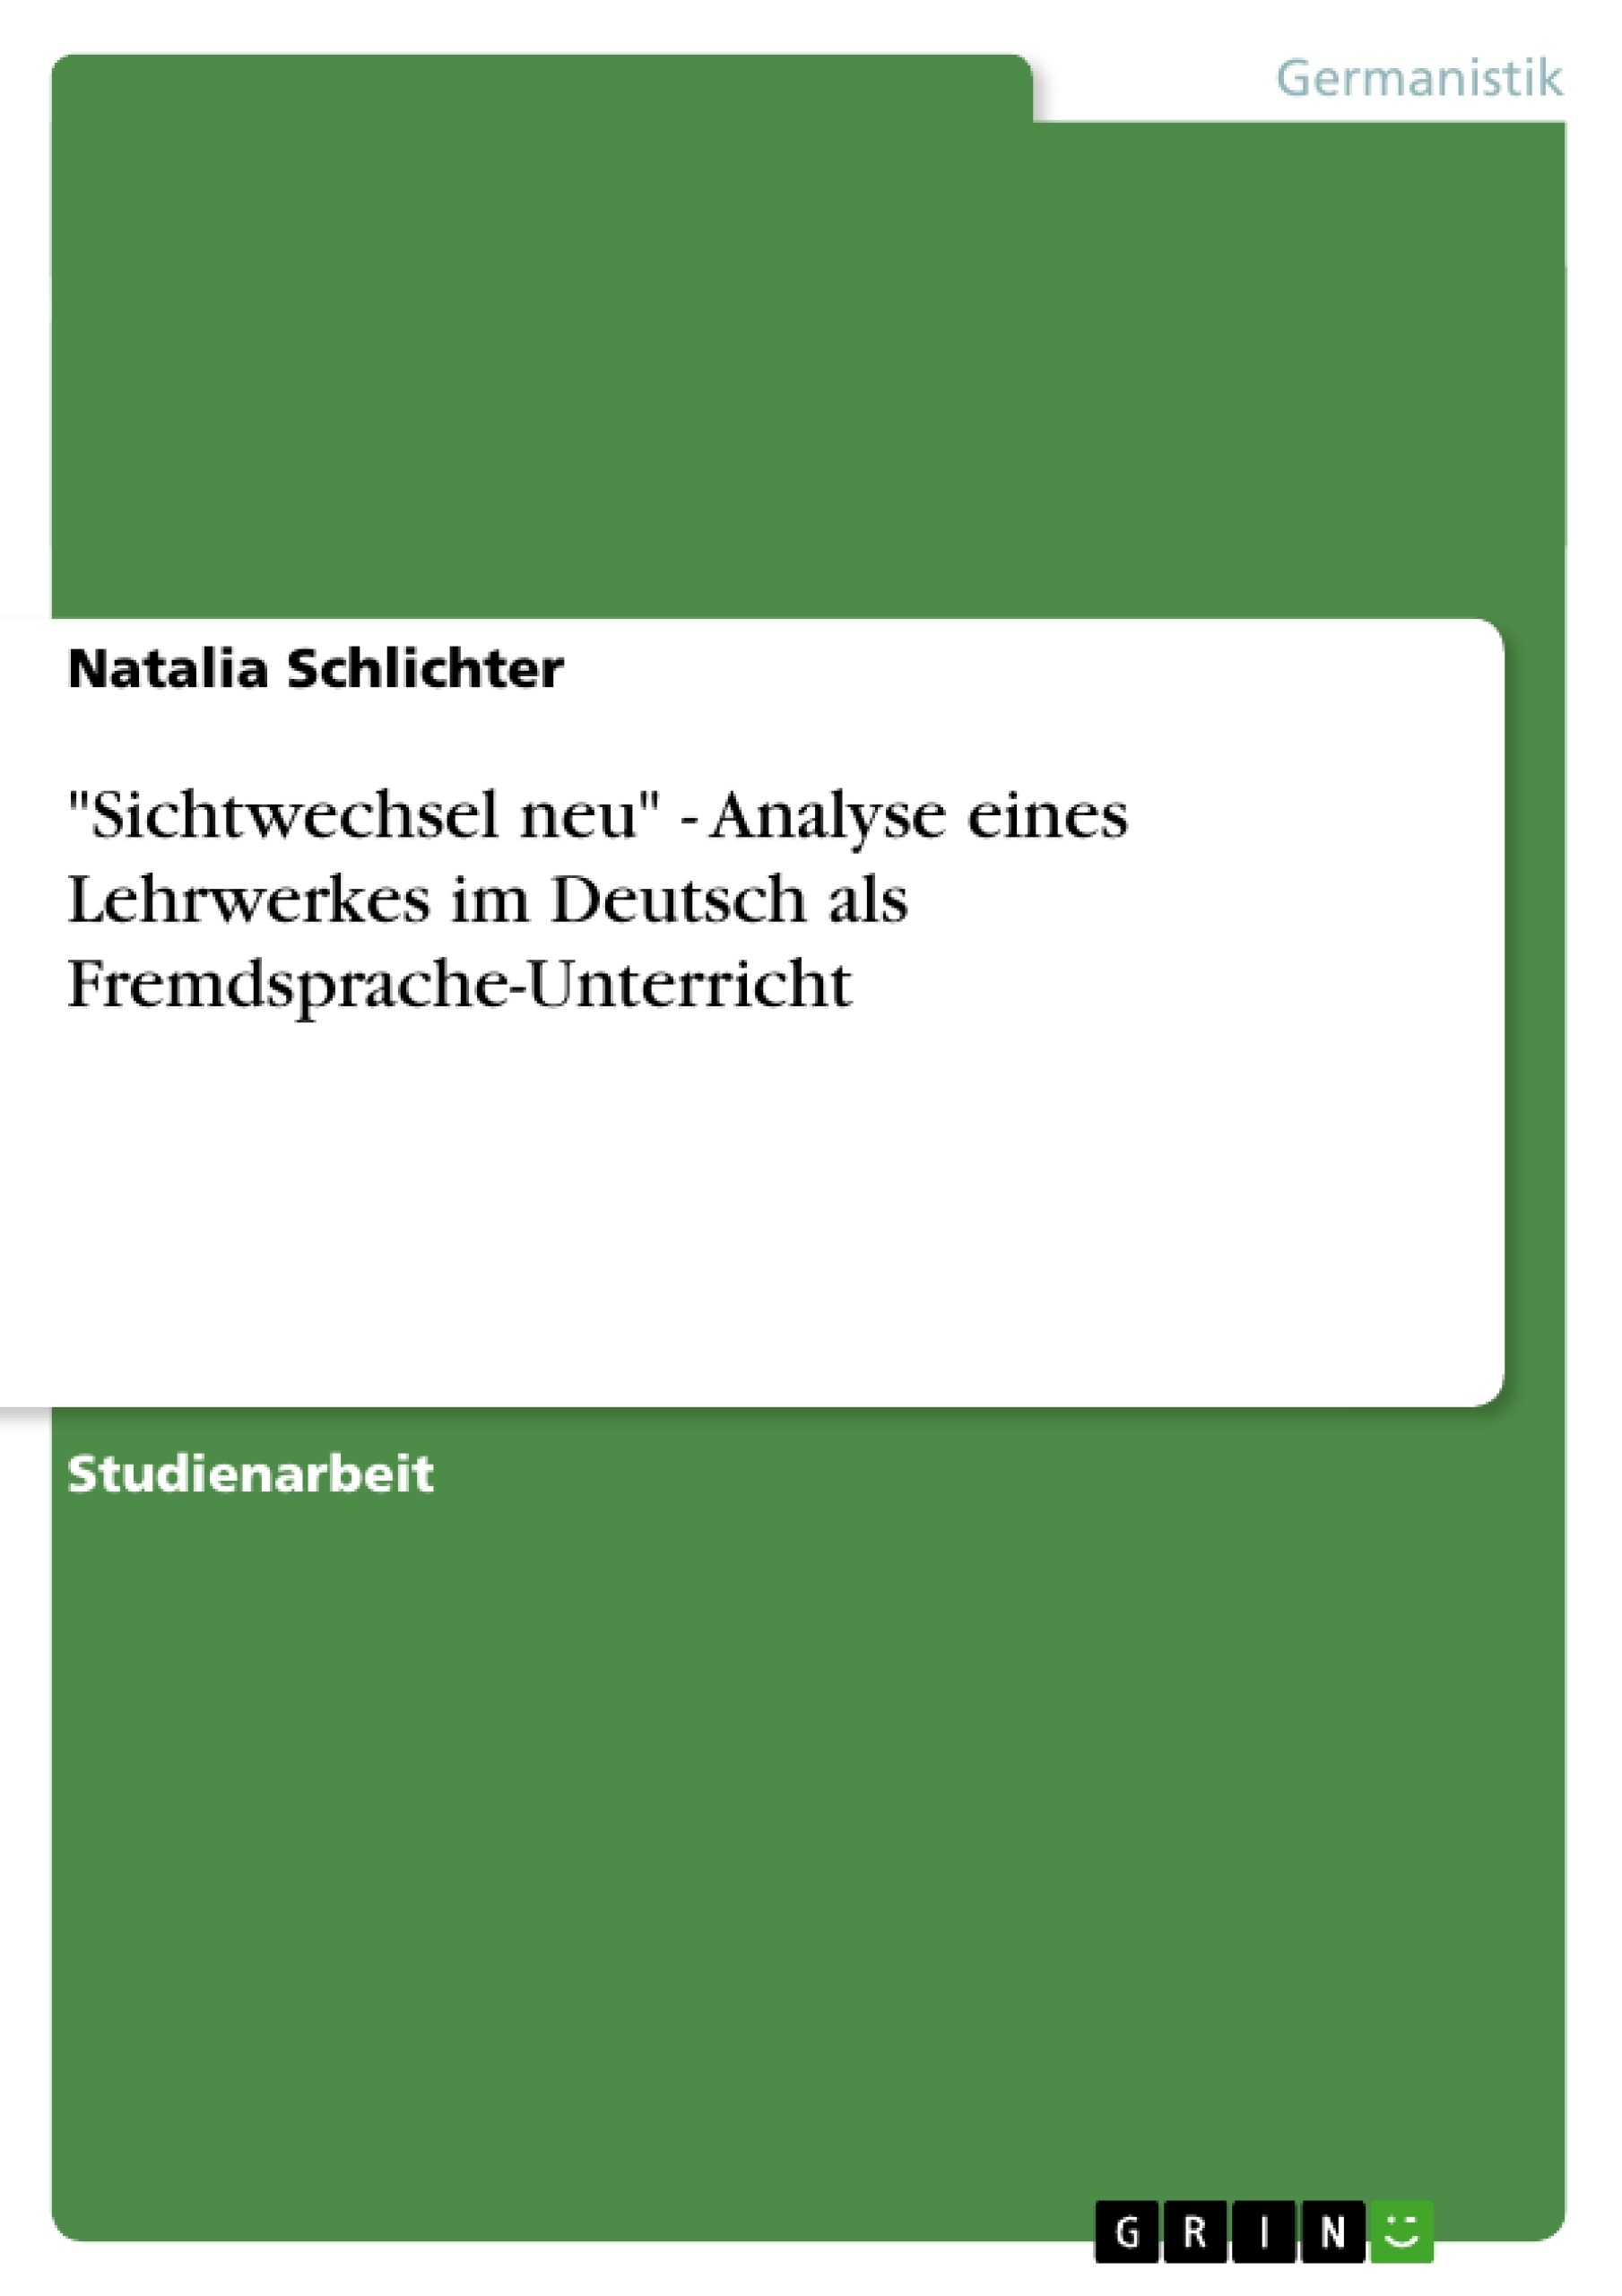 Titre: "Sichtwechsel neu" - Analyse eines Lehrwerkes im Deutsch als Fremdsprache-Unterricht